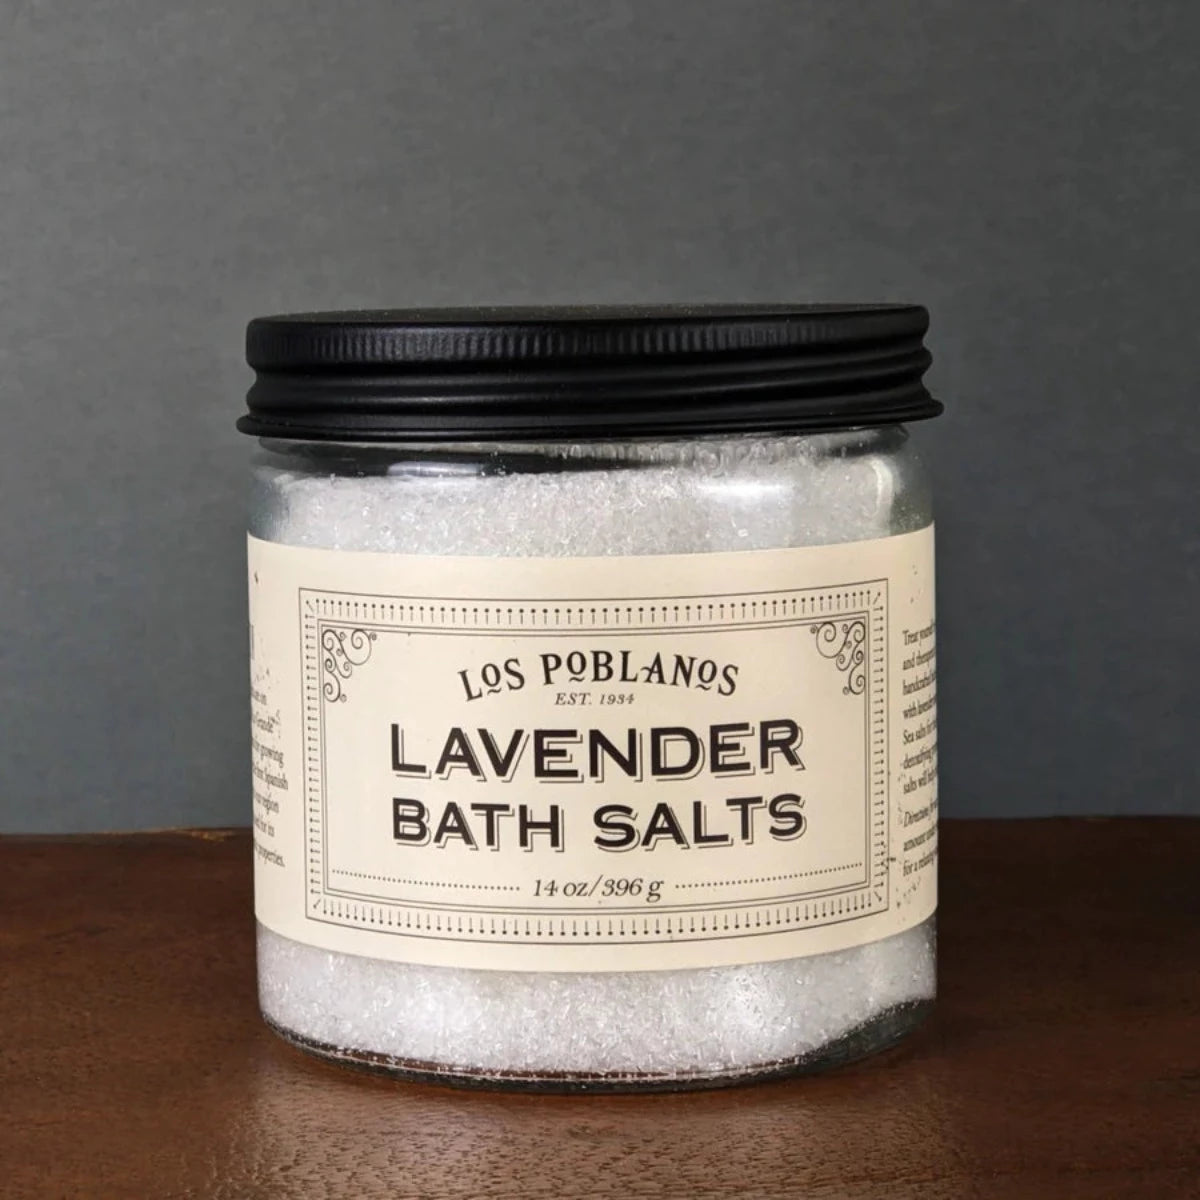 Los Poblanos Lavender Bath Salts